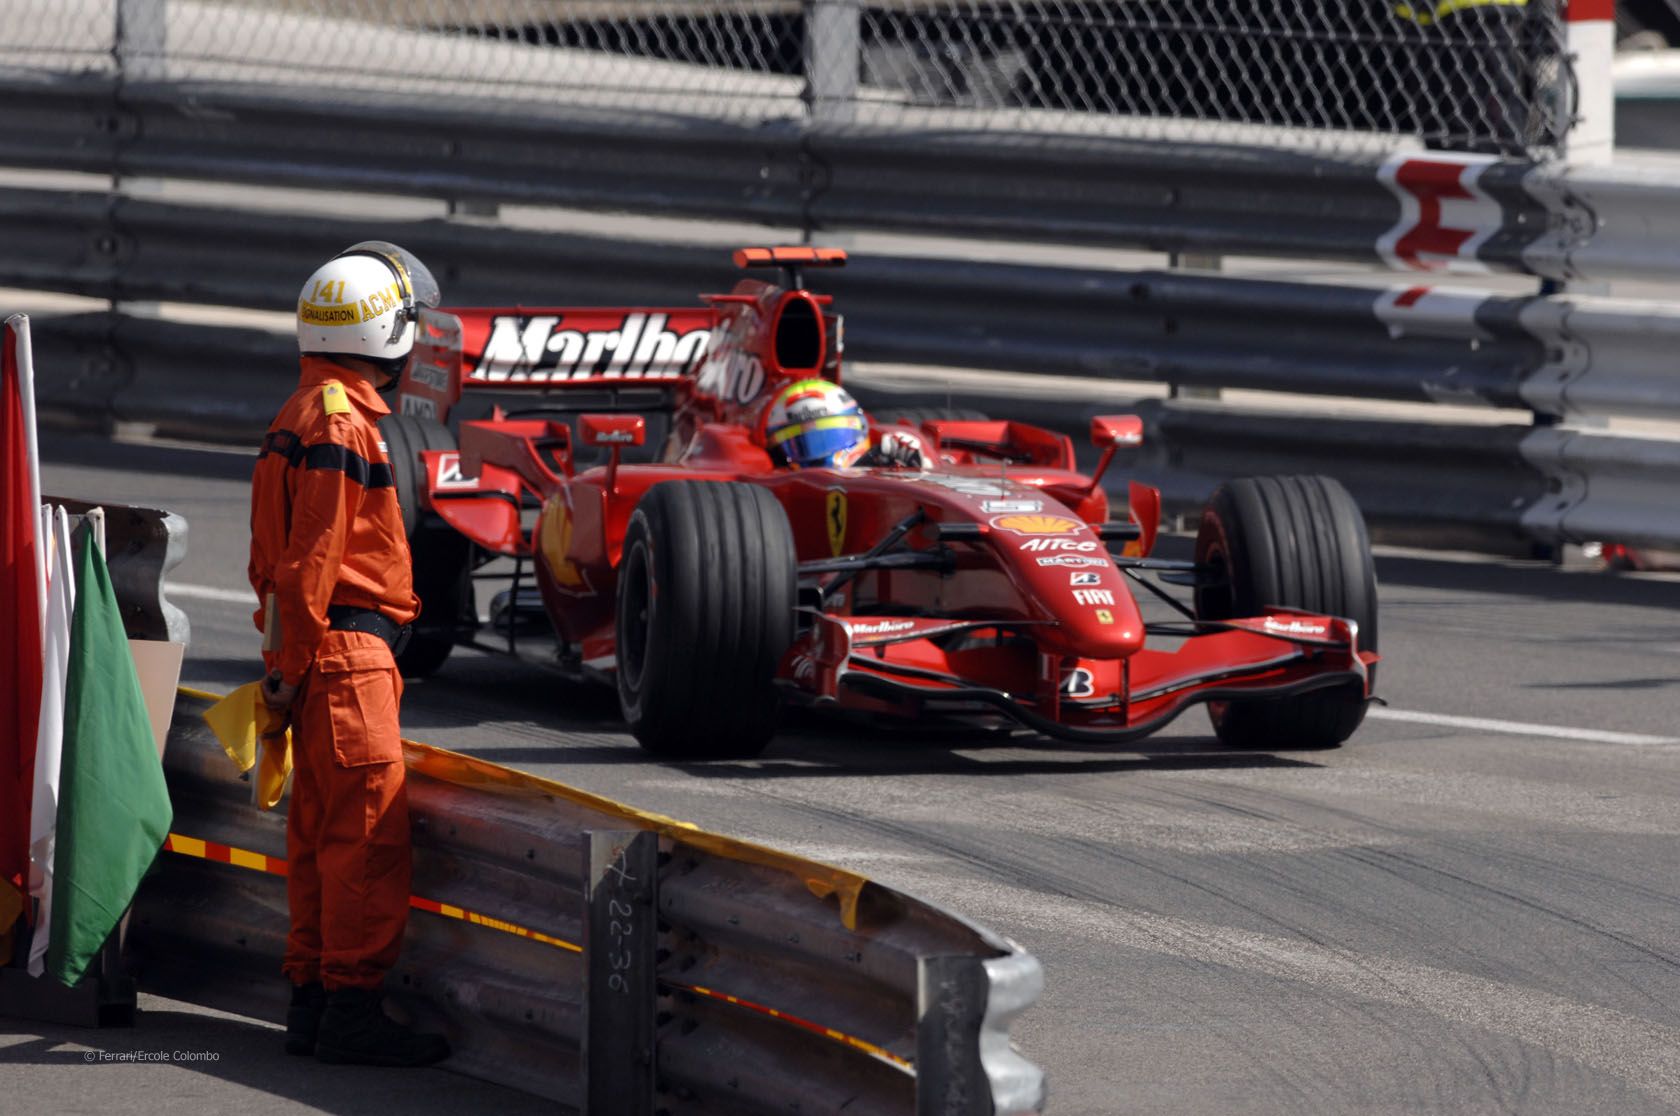 Felipe Massa, impegnato con la F2007 tra le stradine del Principato (foto da: f1fanatic.co.uk)